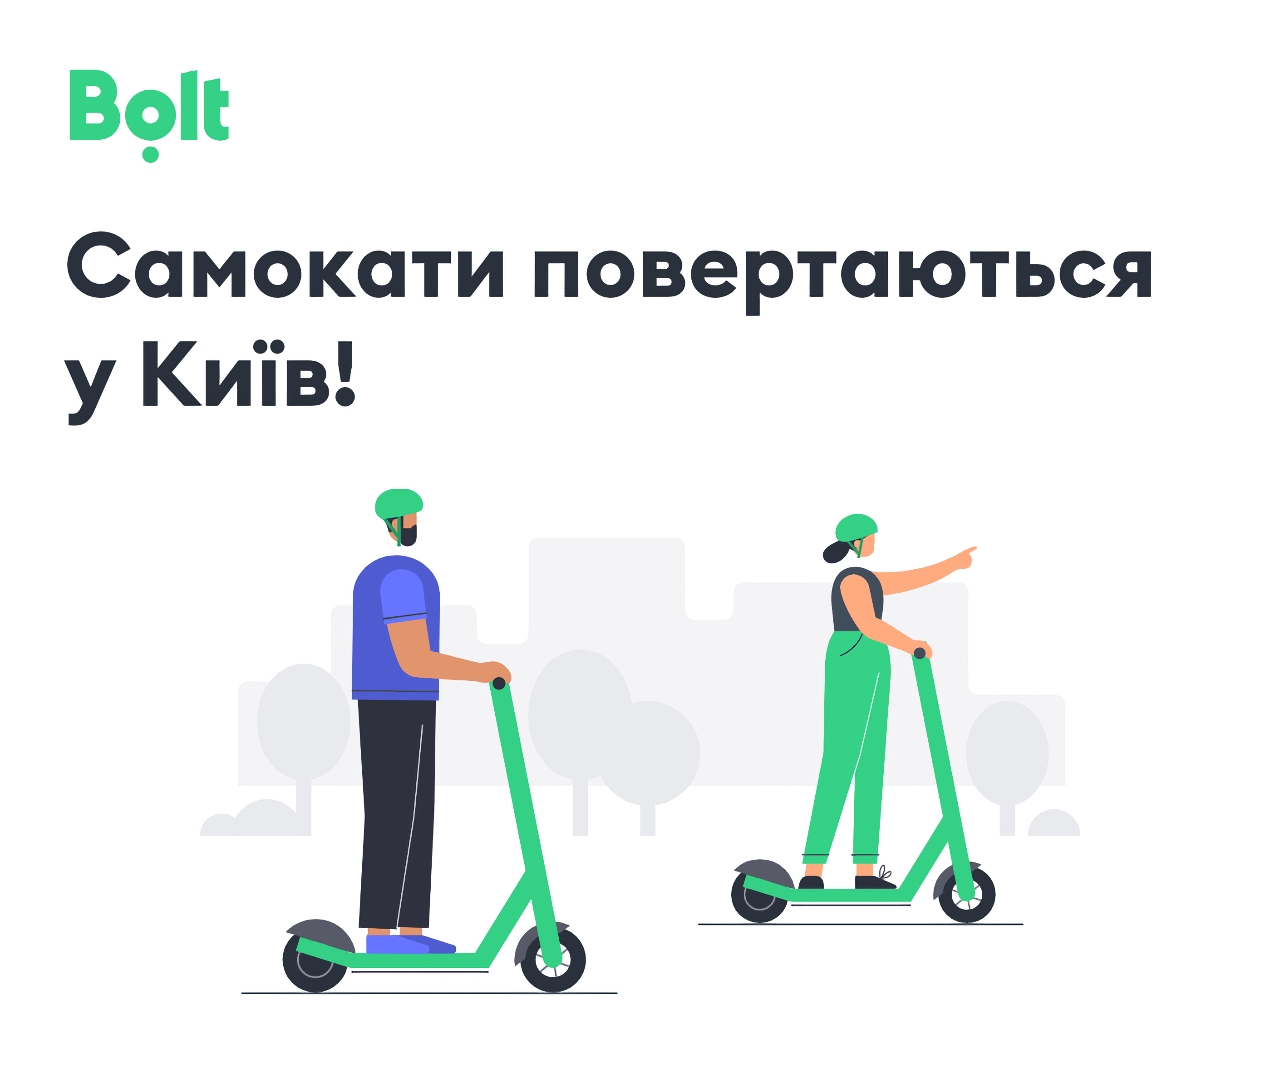 Bolt відновлює прокат самокатів у Києві